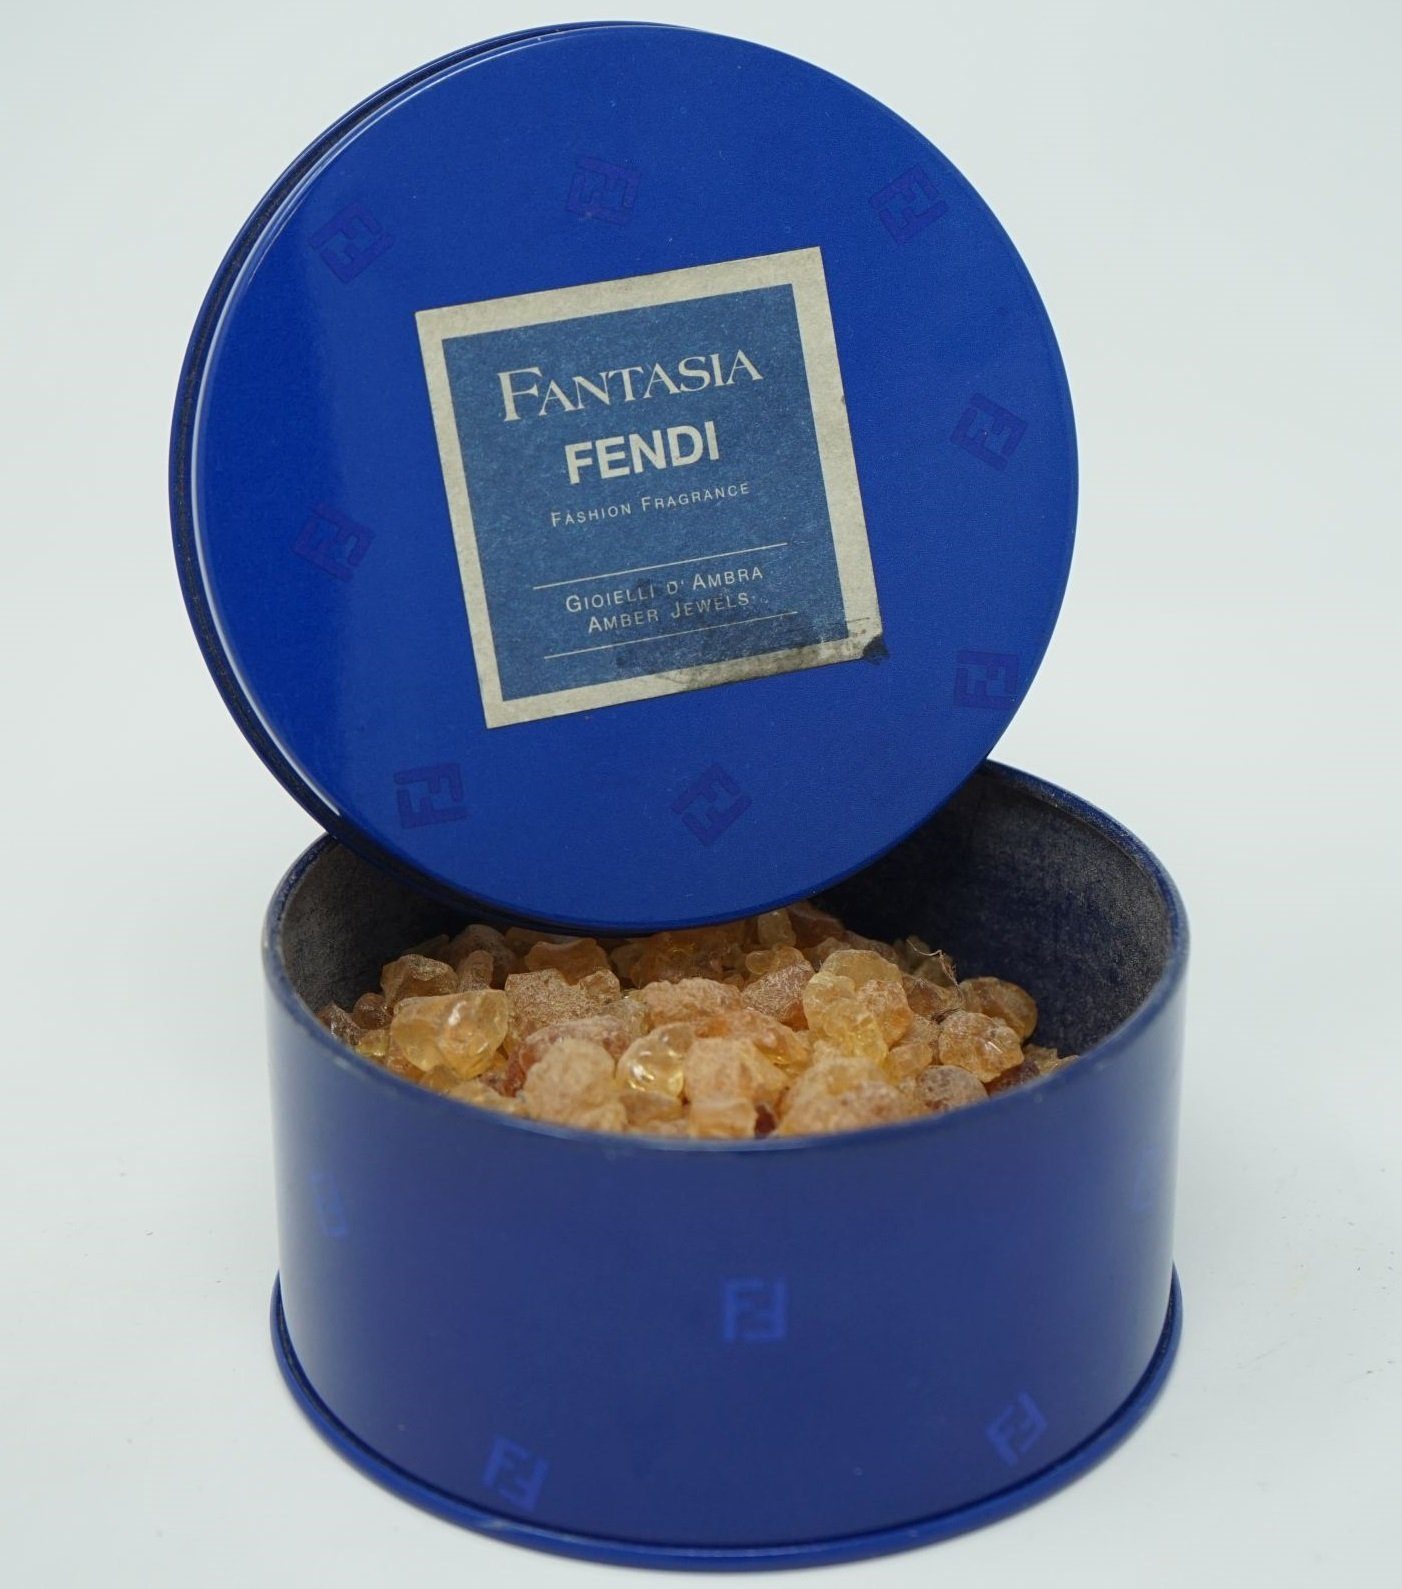 FENDI Eau de Parfum Crystals Jewels Fantasia Fendi g Bath Amber Perfumed 200